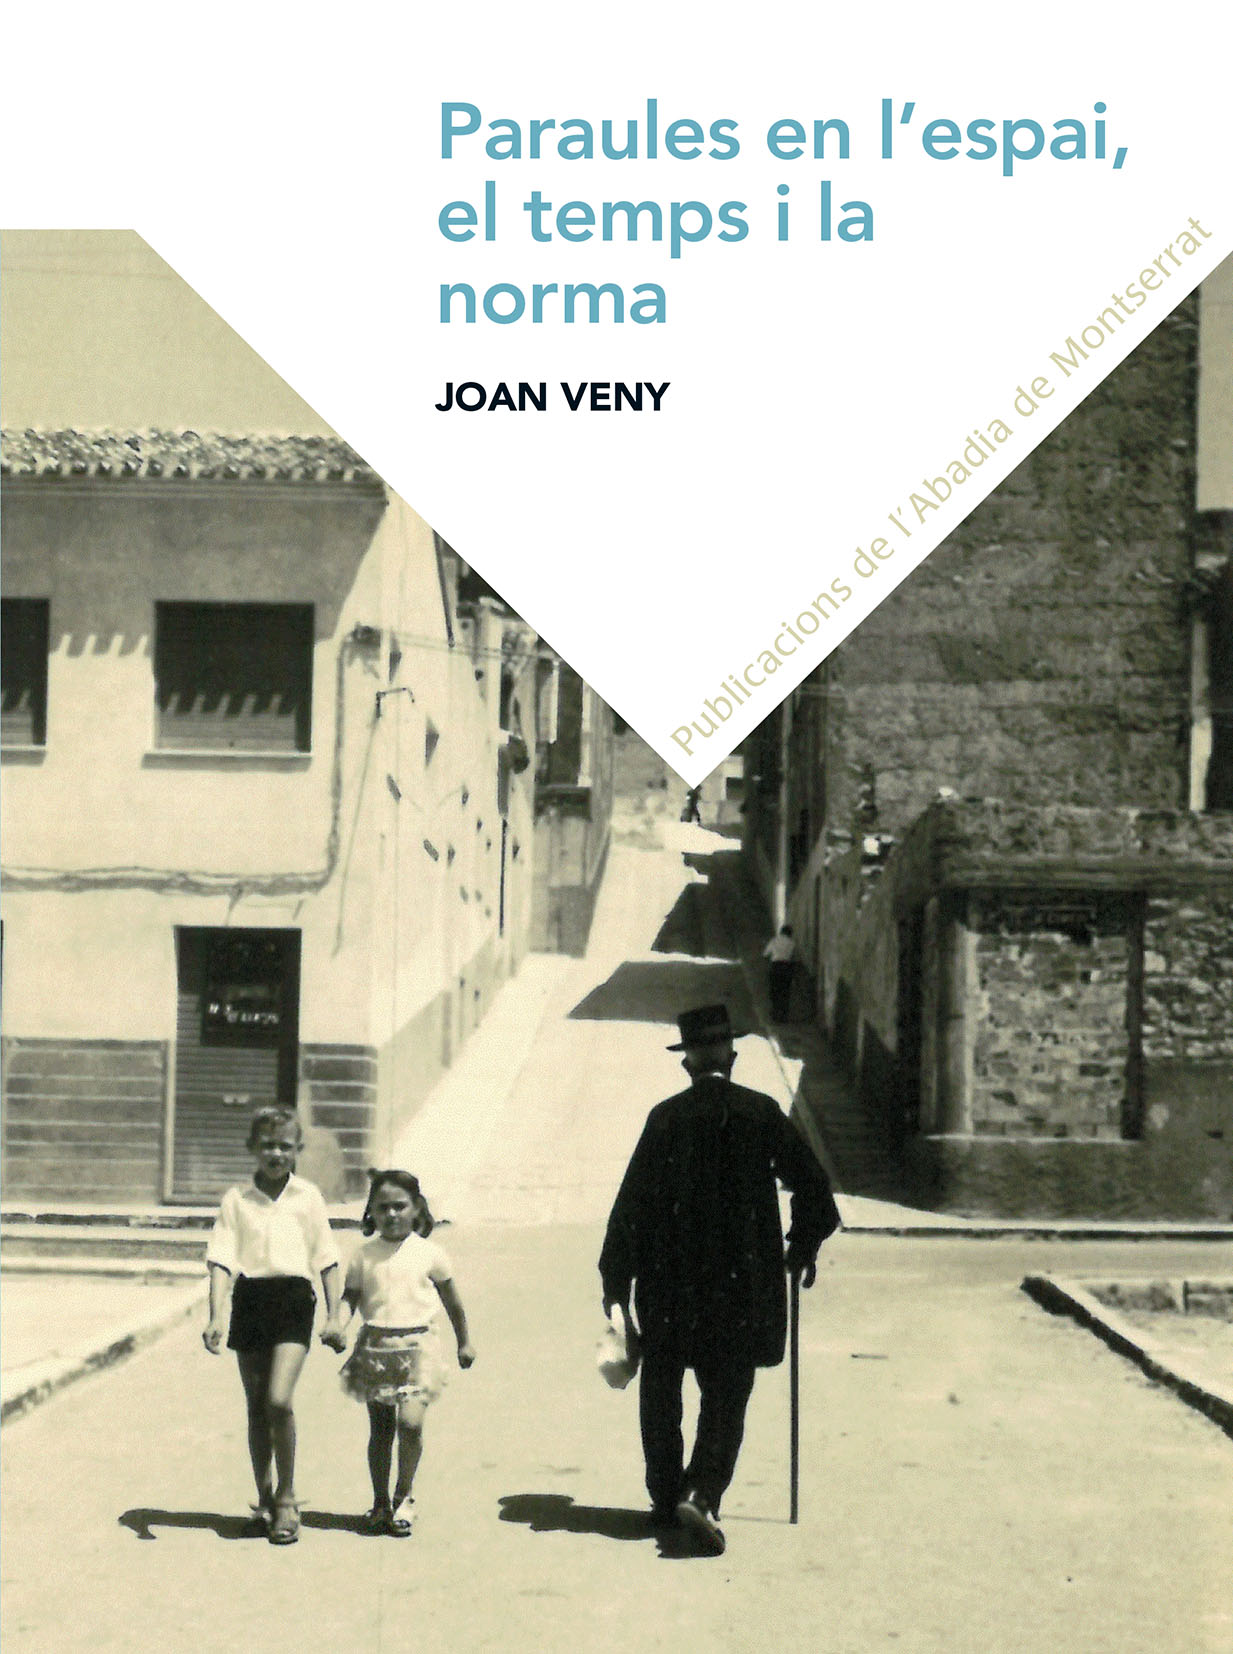 Joan Veny i Clar